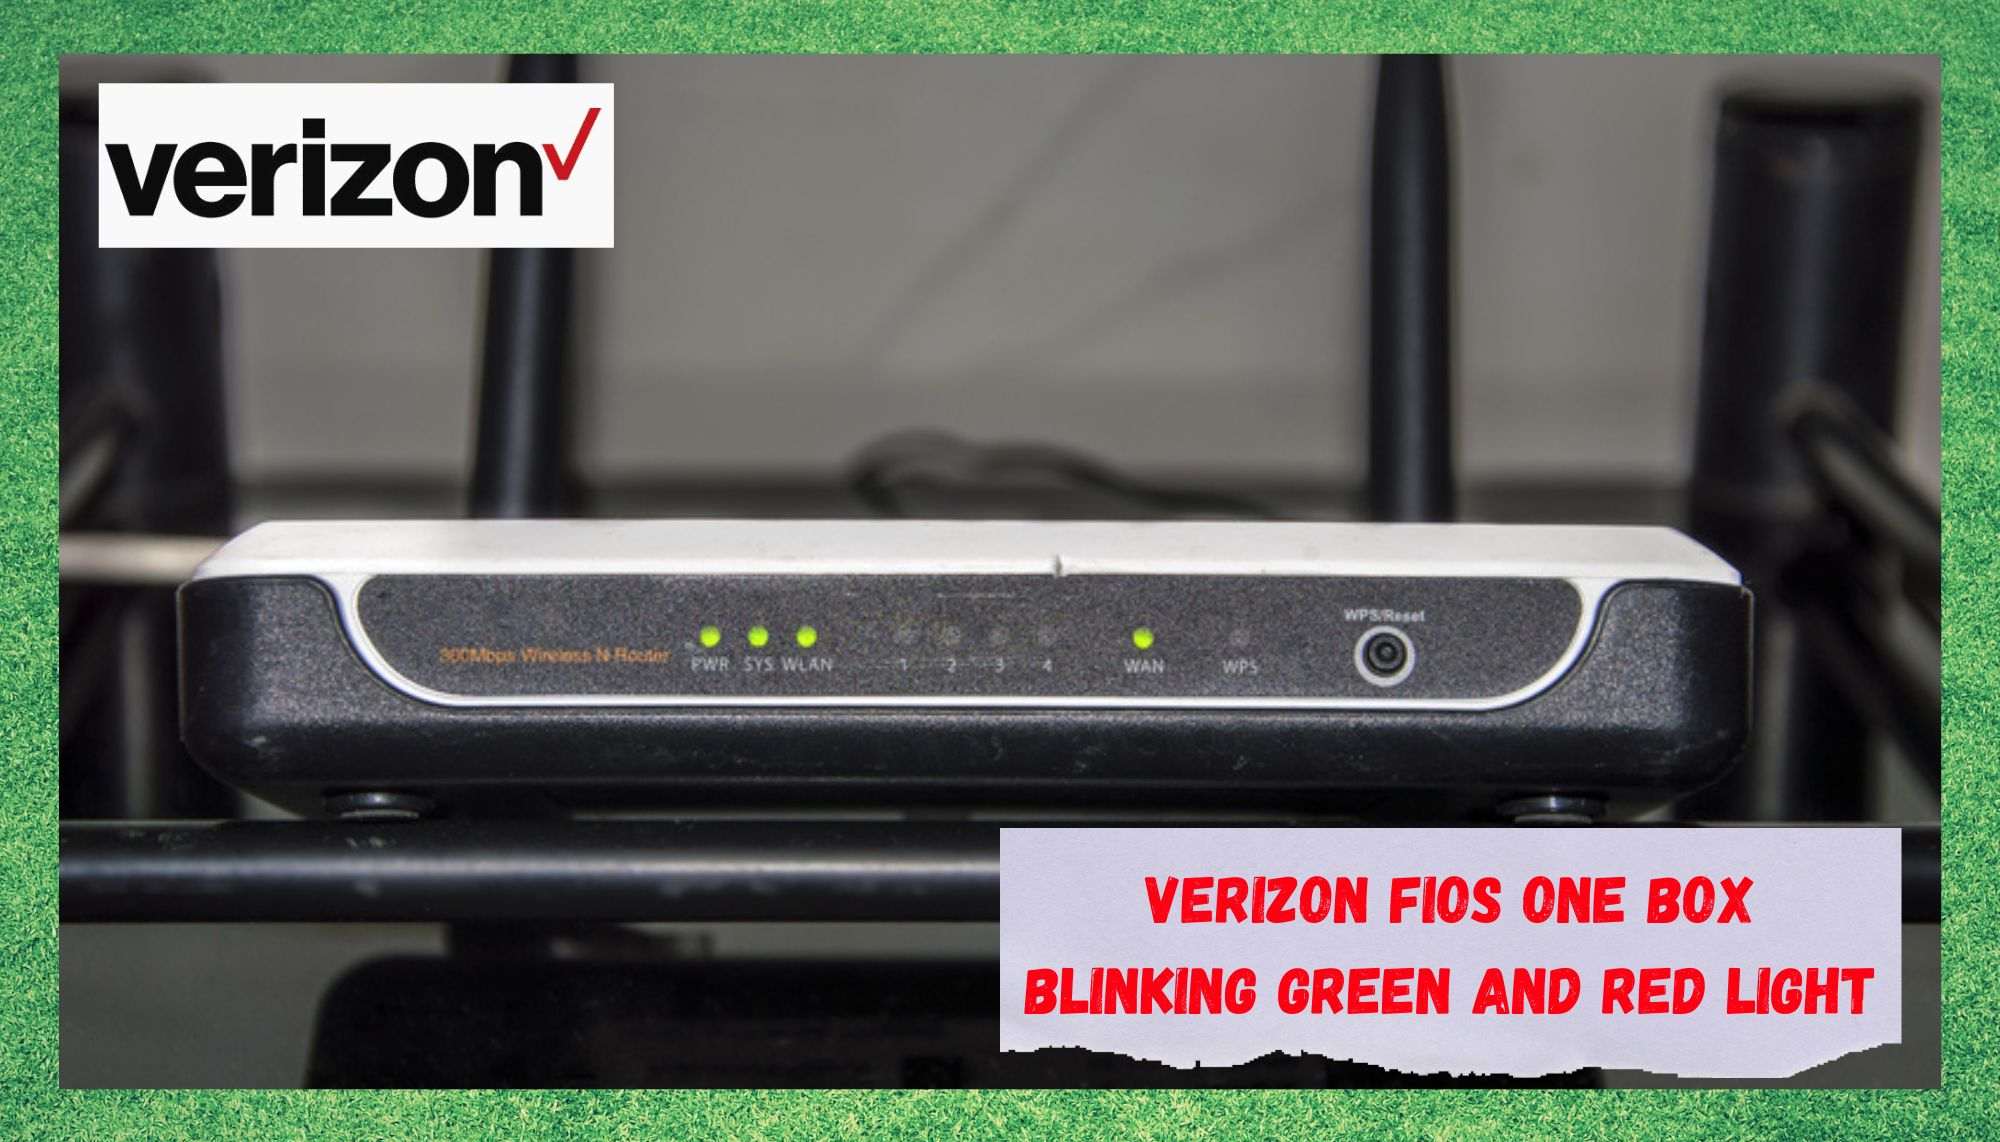 2 raisons pour lesquelles Verizon FiOS One Box clignote en vert et en rouge